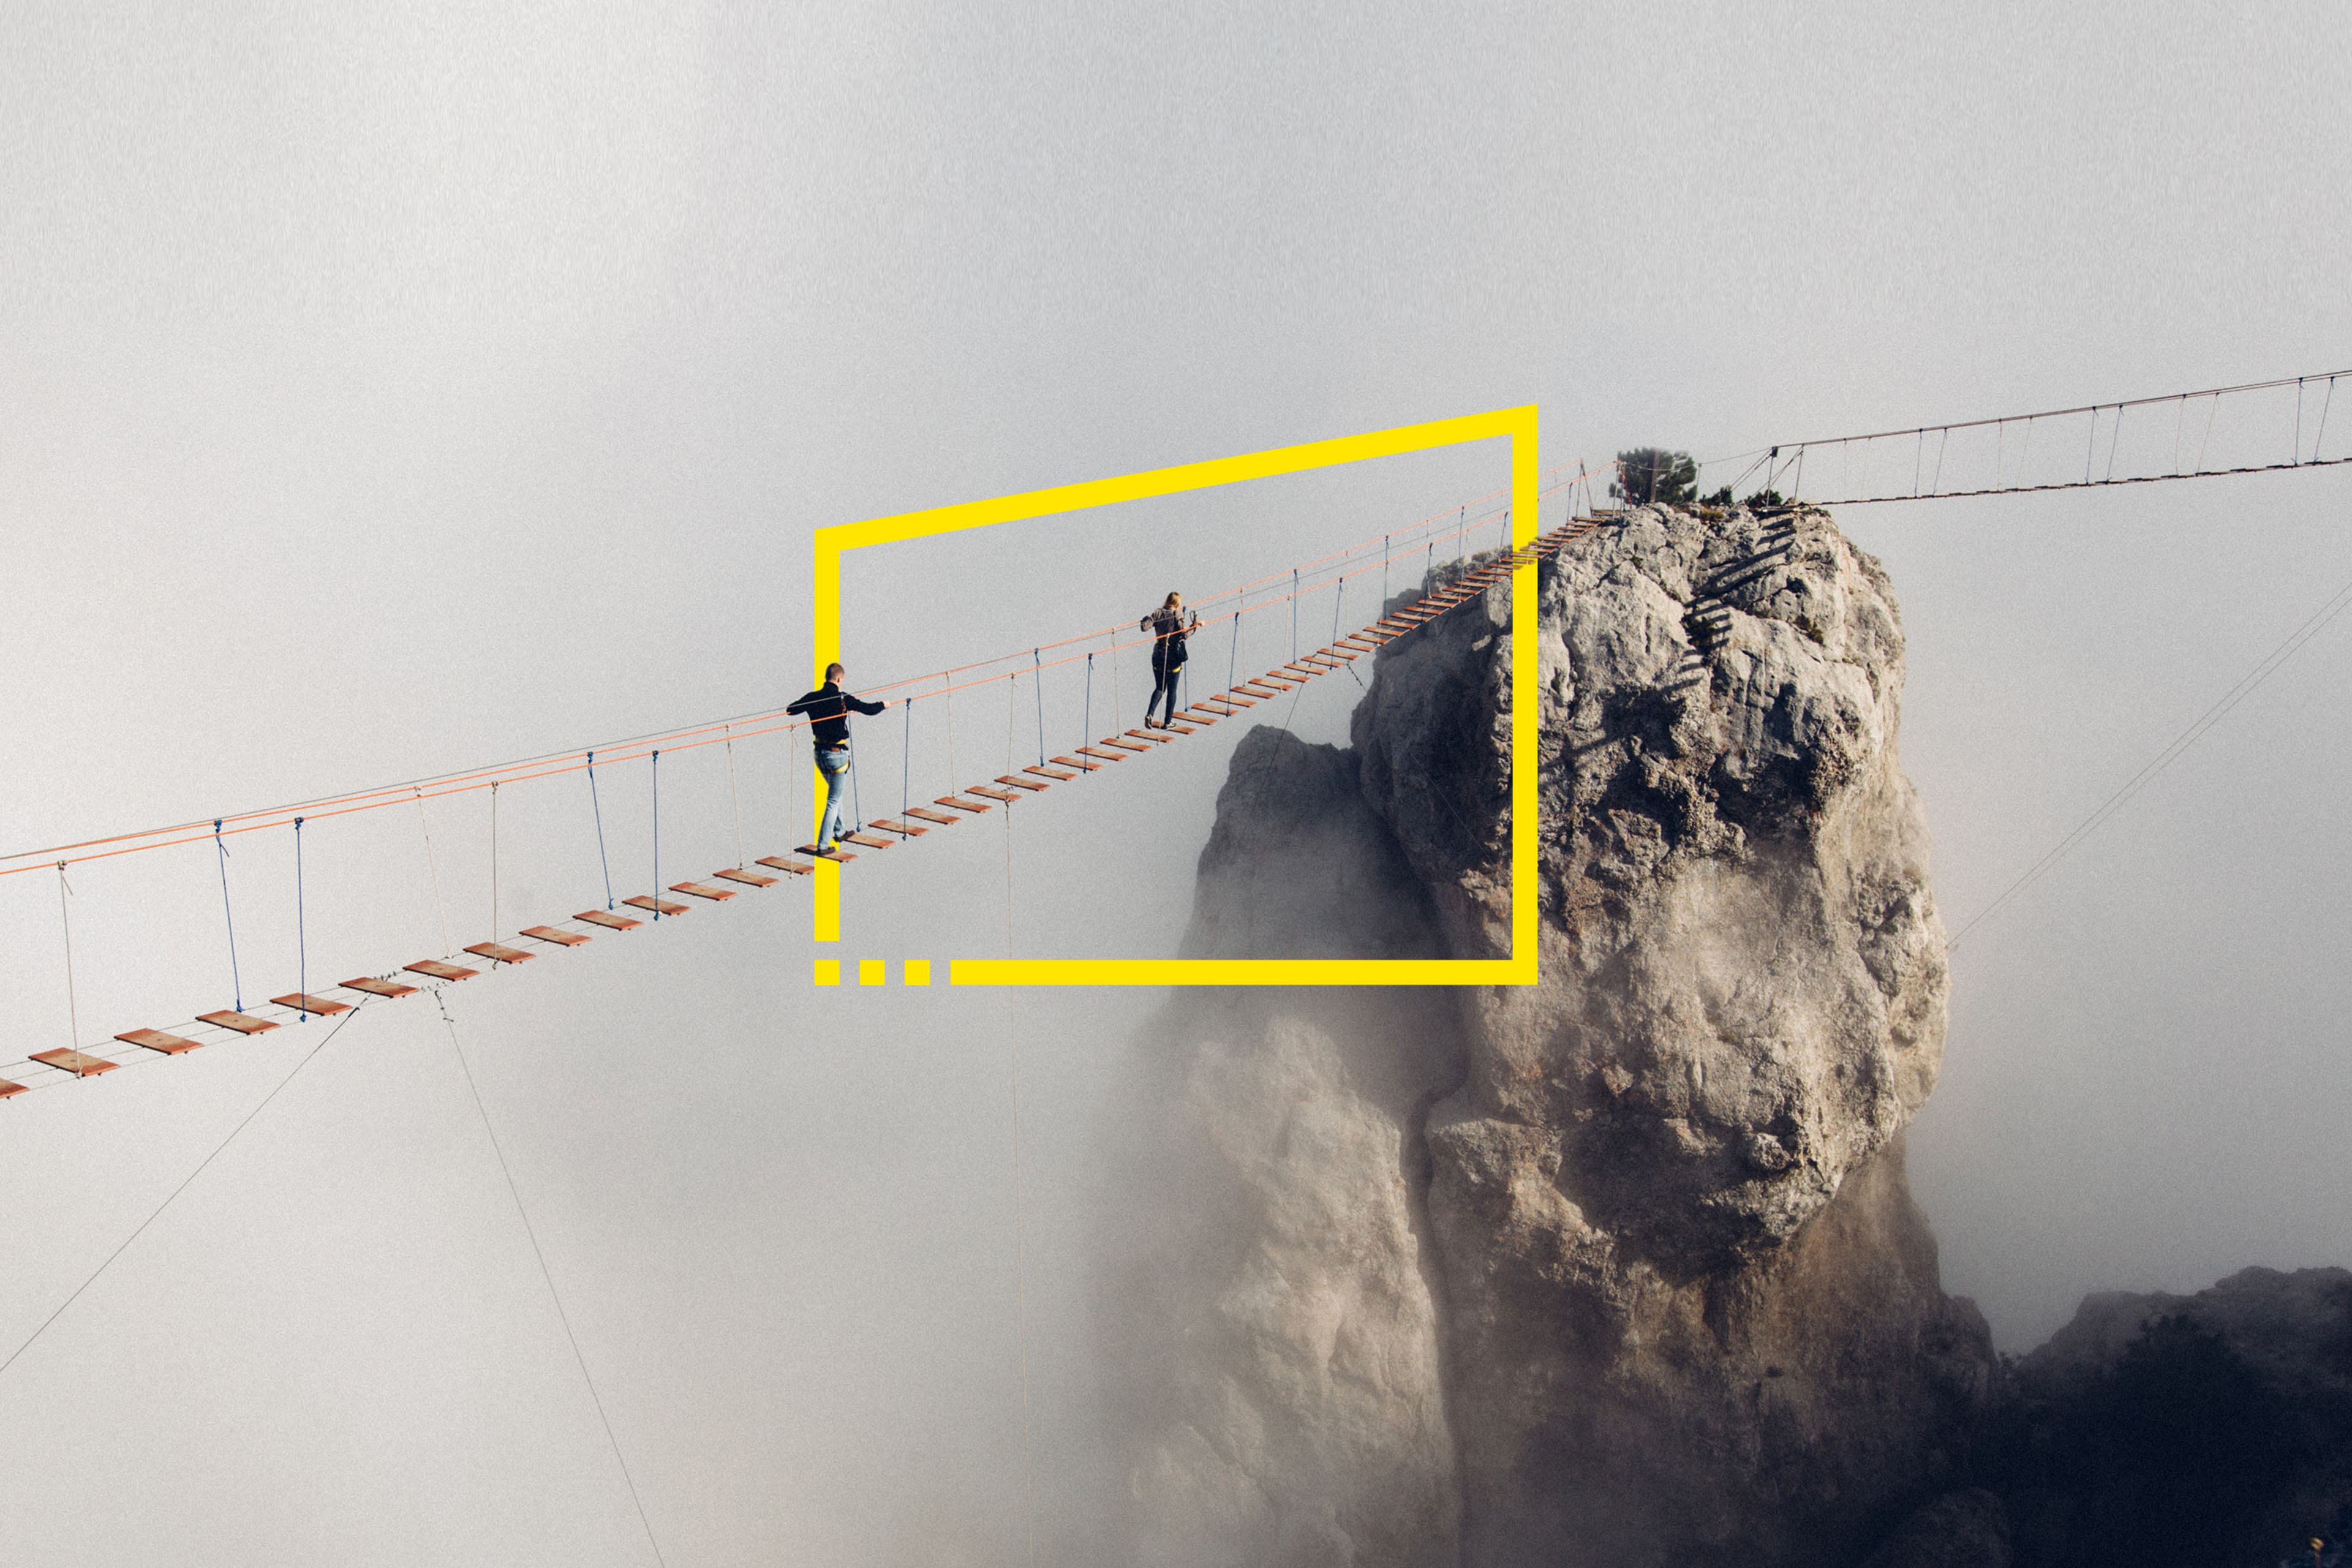 People rope bridge yalta fog image